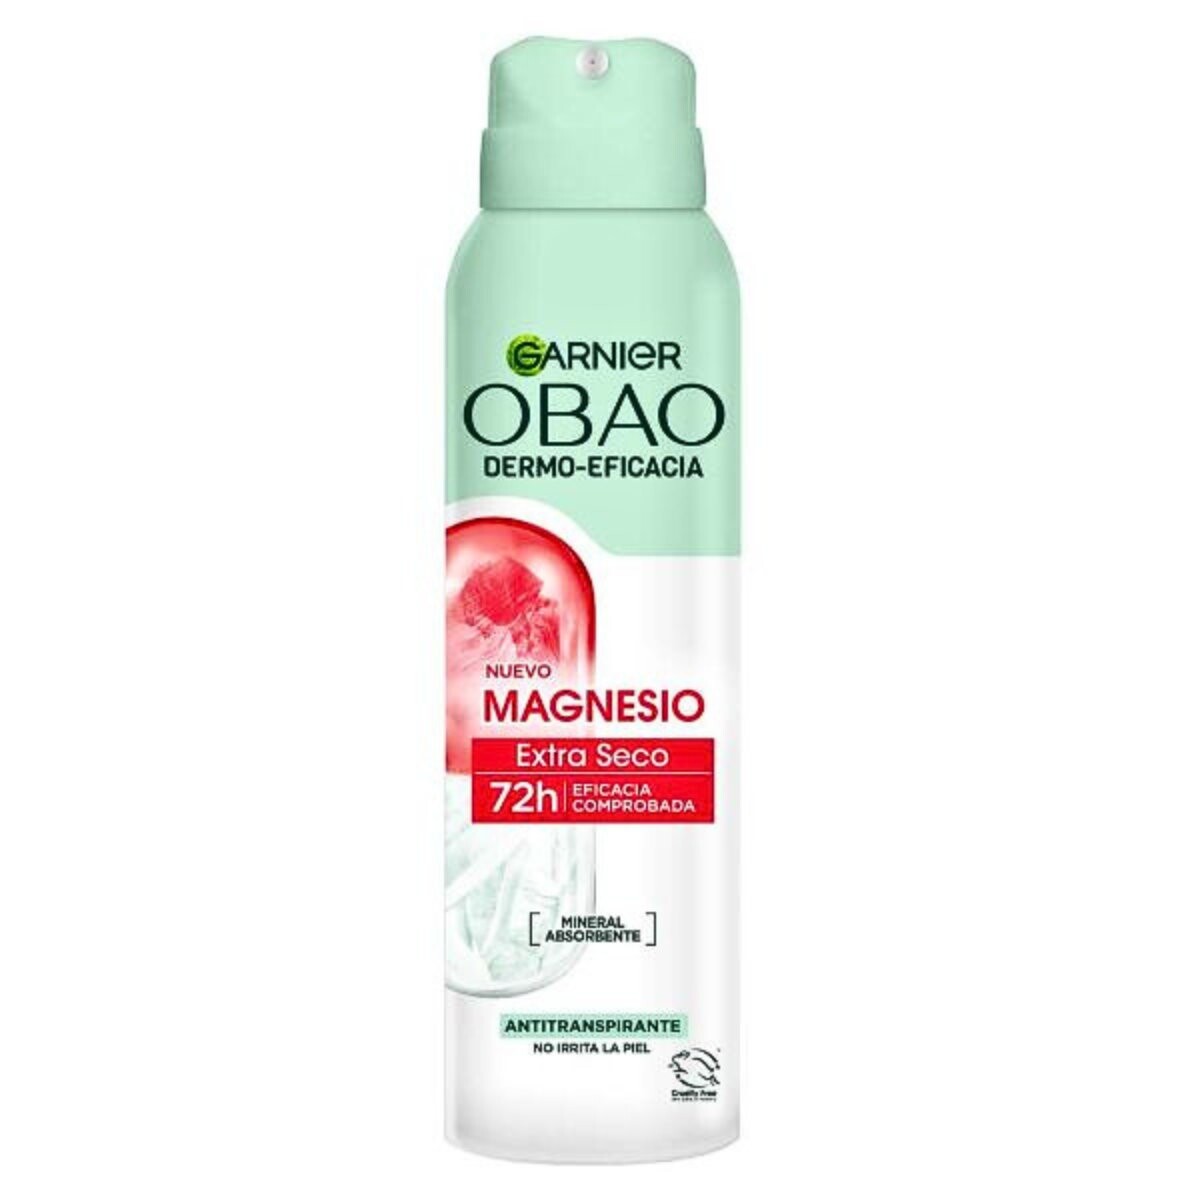 Desodorante en aerosol Obao dermo-eficacia magnesio extra seco 